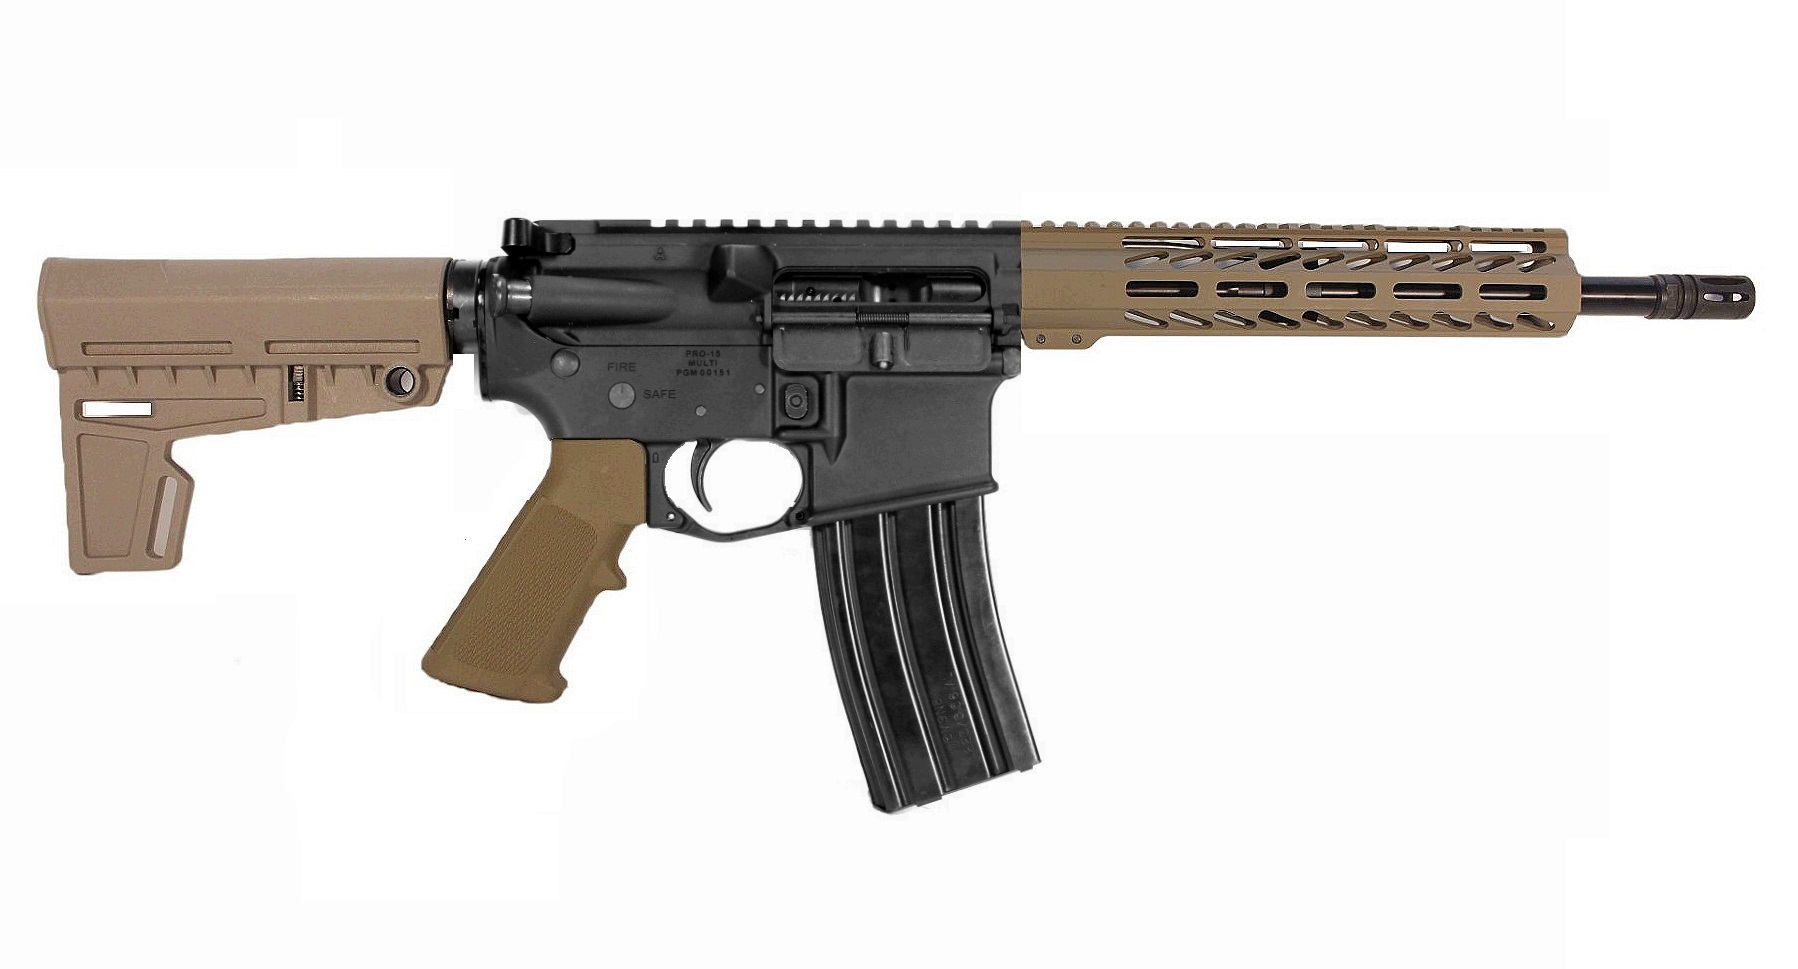 12.5 inch 350 Legend AR Pistol in BLK/FDE